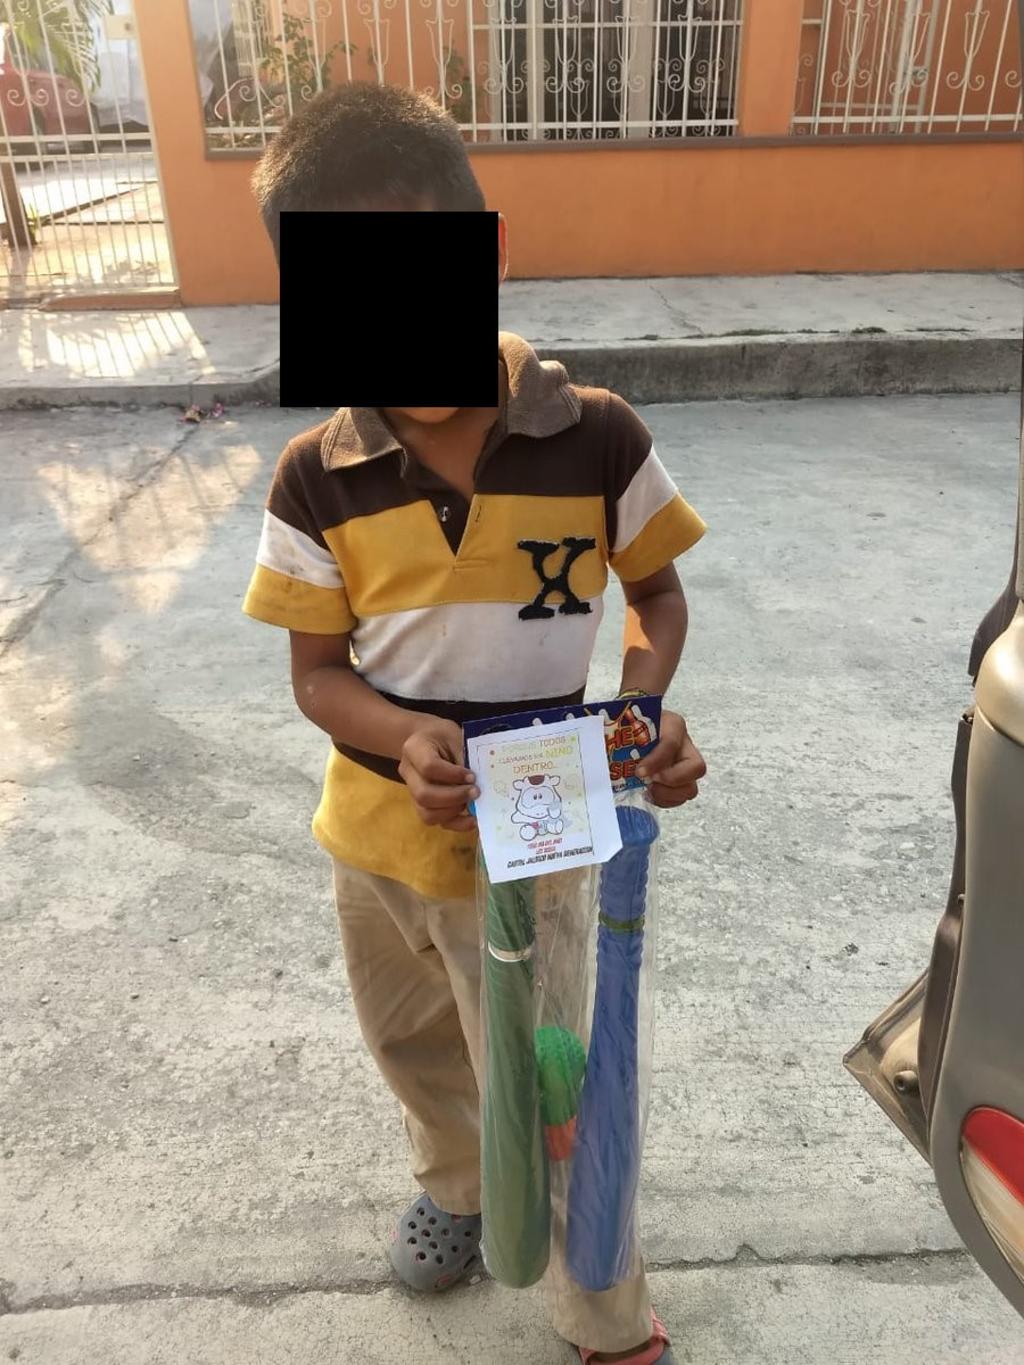 El gobernador de Veracruz, Cuitláhuac García Jiménez (Morena), admitió este jueves que se detectó en un municipio que niños recibieron regalos con un mensaje de parte del CJNG, organización criminal que tiene presencia en varias regiones del estado. (TWITTER)